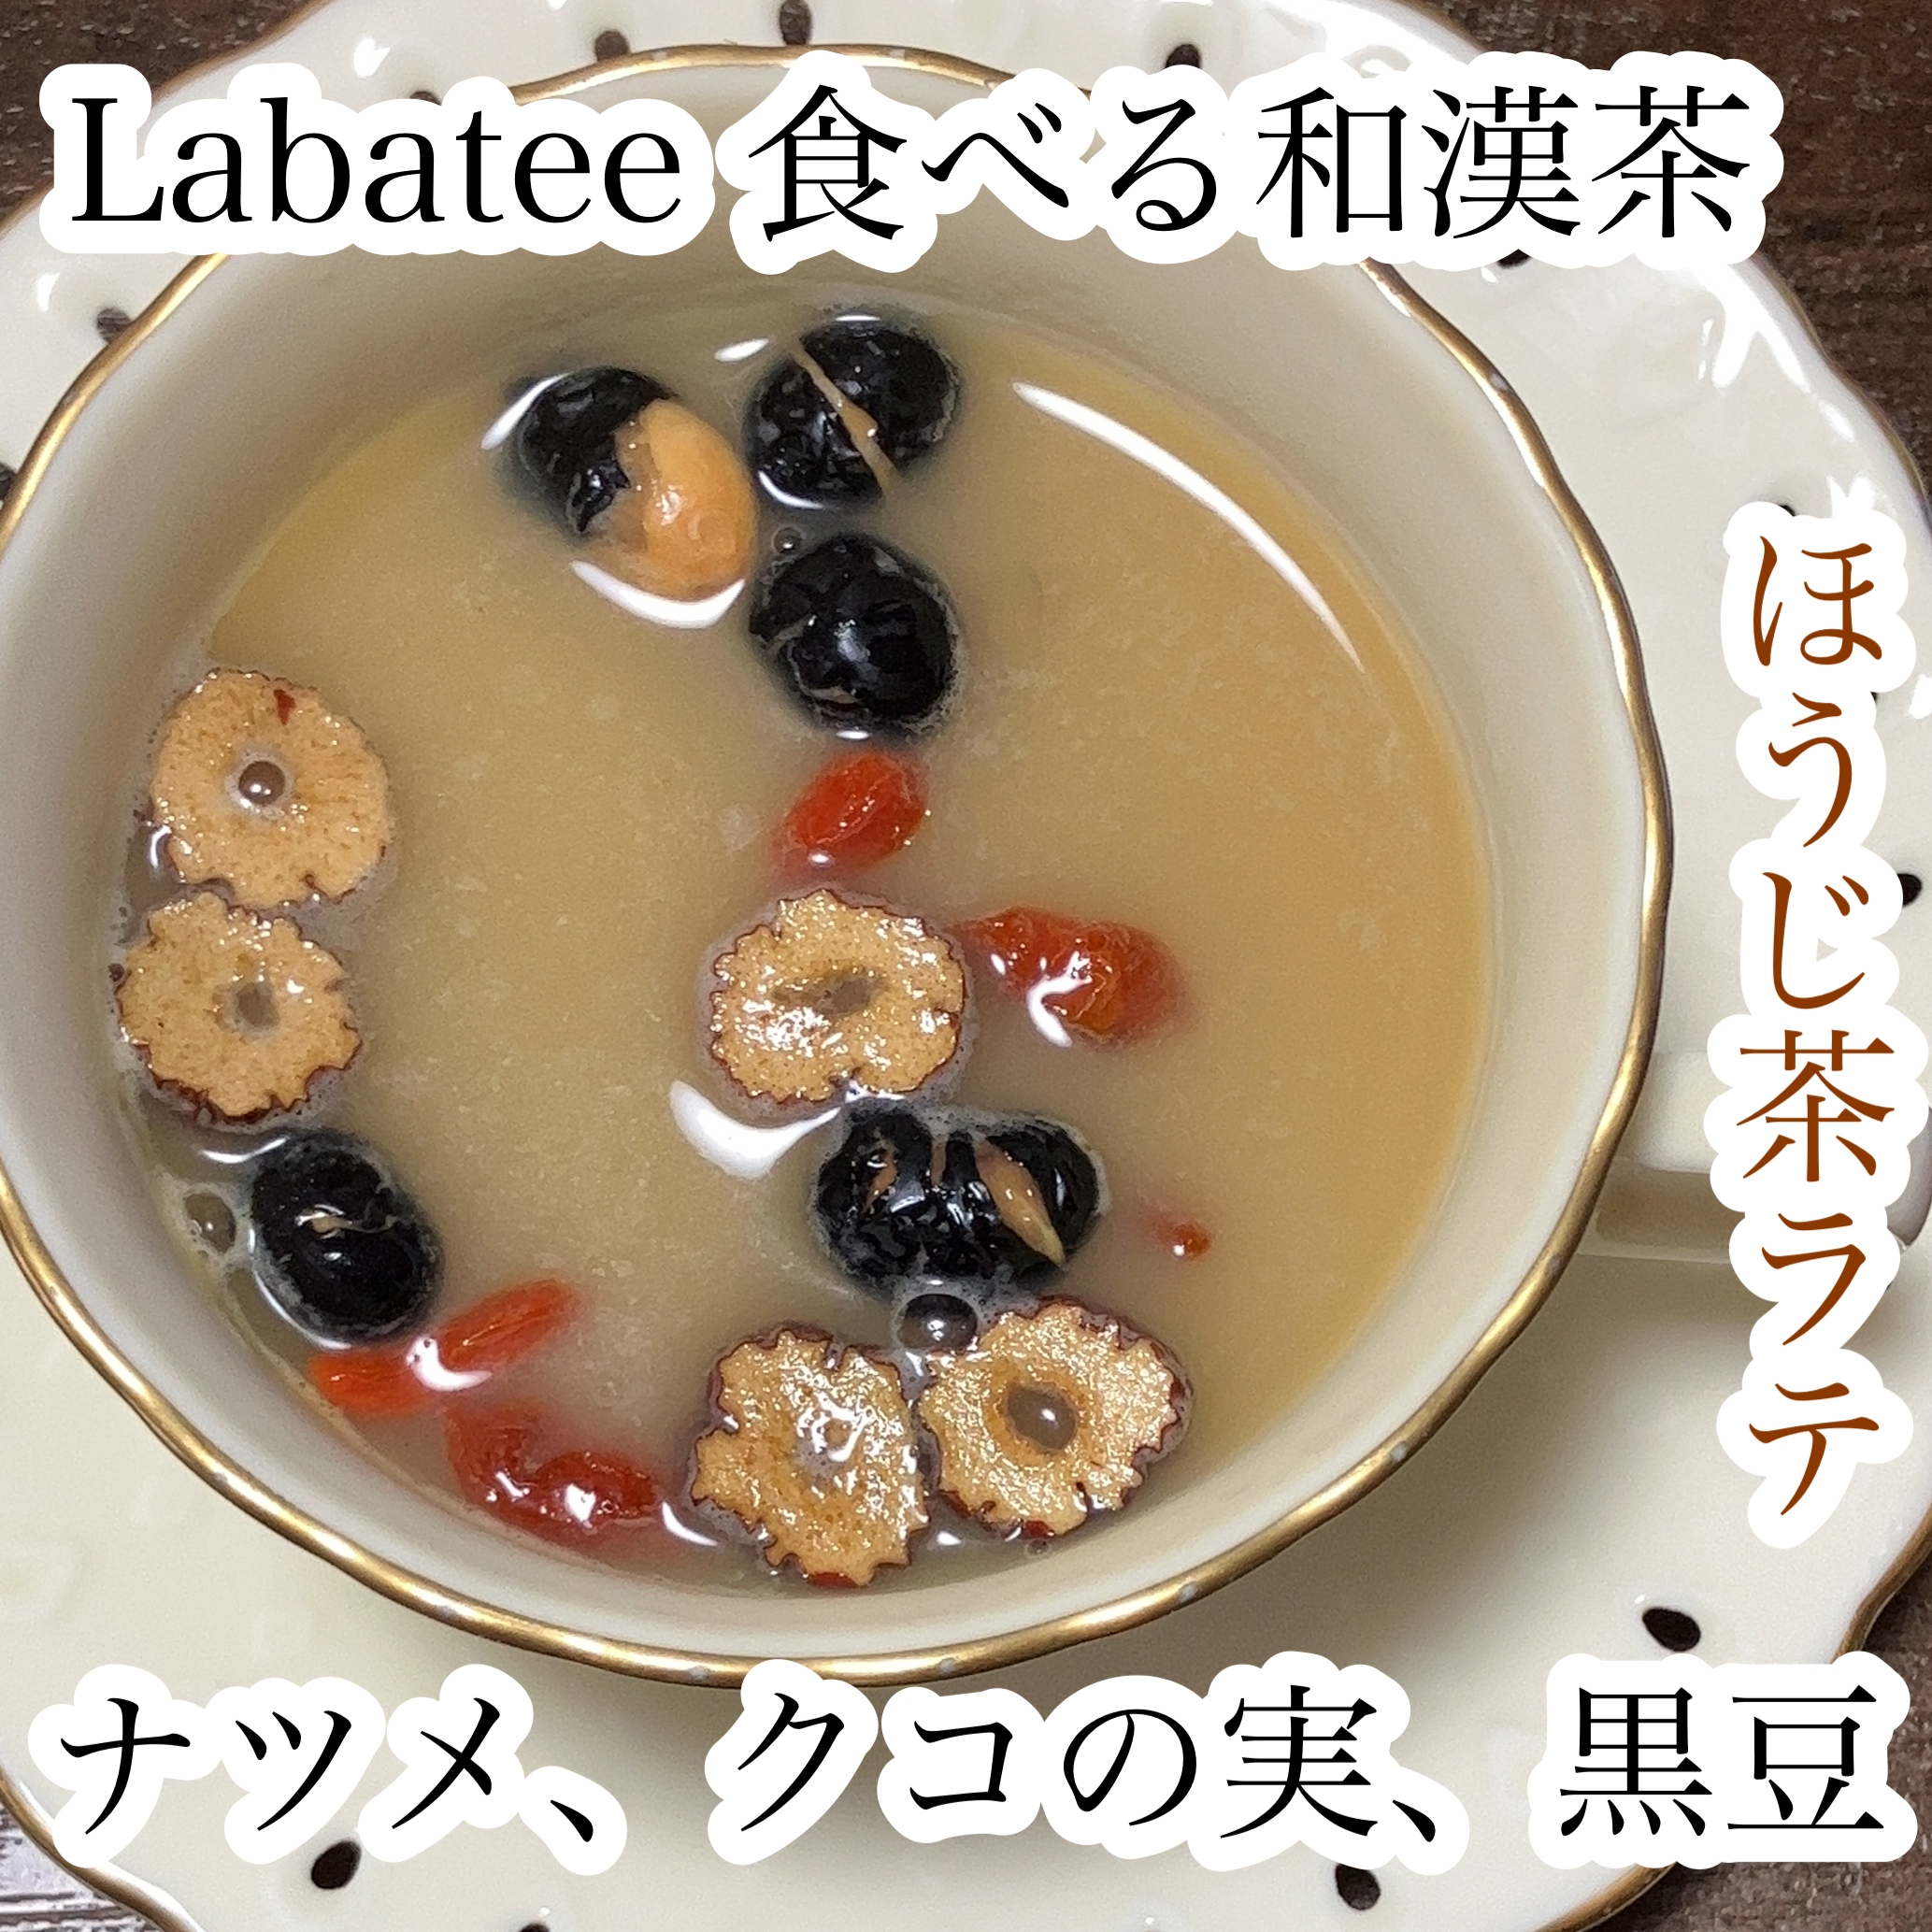 Labatee(ラバティー) 食べる和漢茶の良い点・メリットに関するれなさんの口コミ画像1